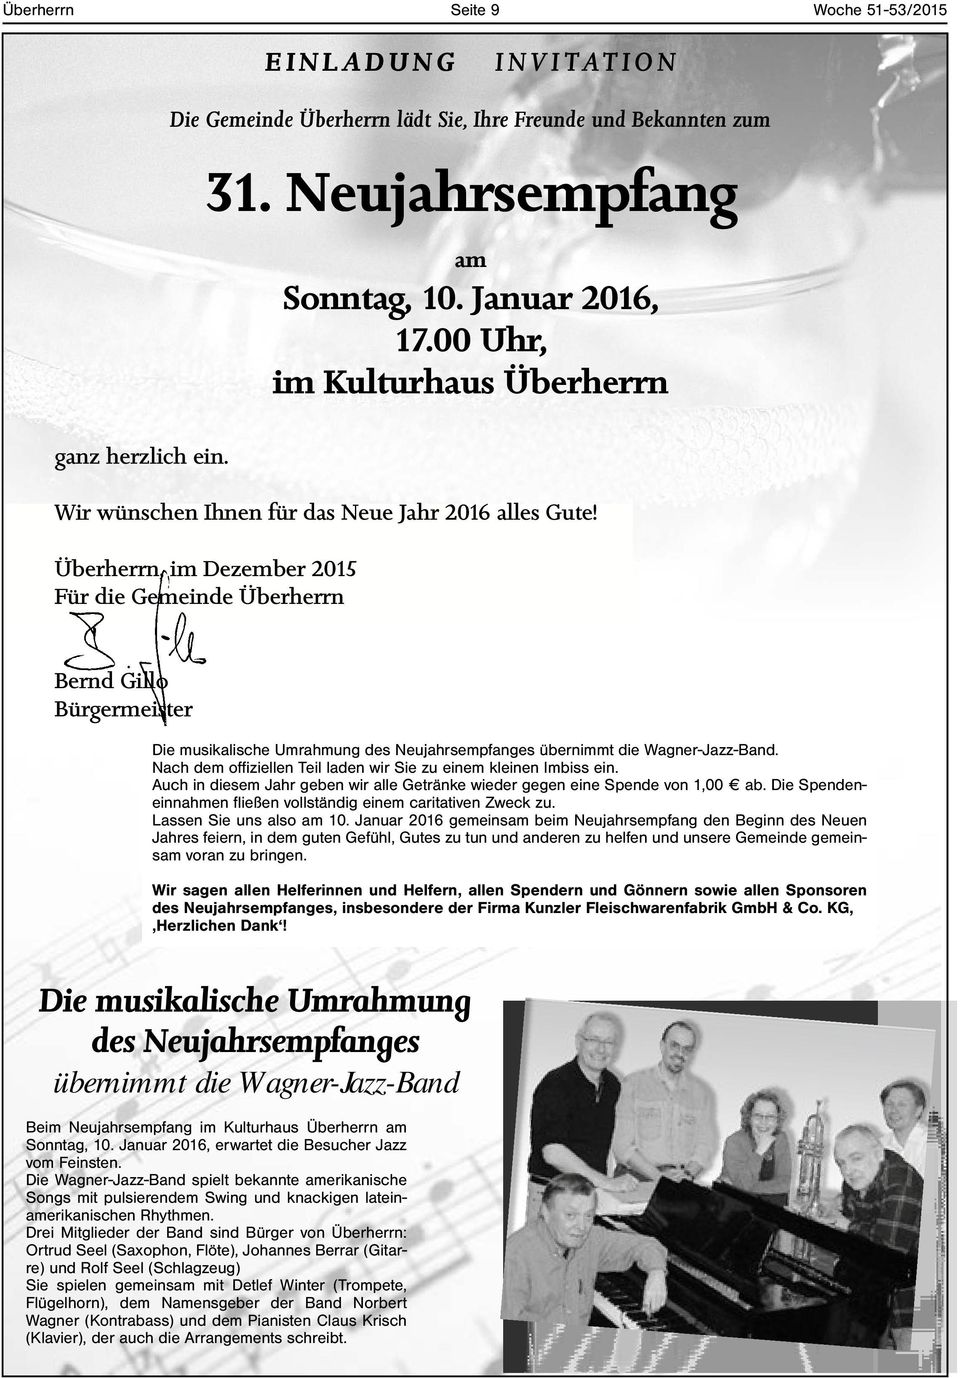 Überherrn, im Dezember 2015 Für die Gemeinde Überherrn Bernd Gillo Bürgermeister Die musikalische Umrahmung des Neujahrsempfanges übernimmt die Wagner-Jazz-Band.